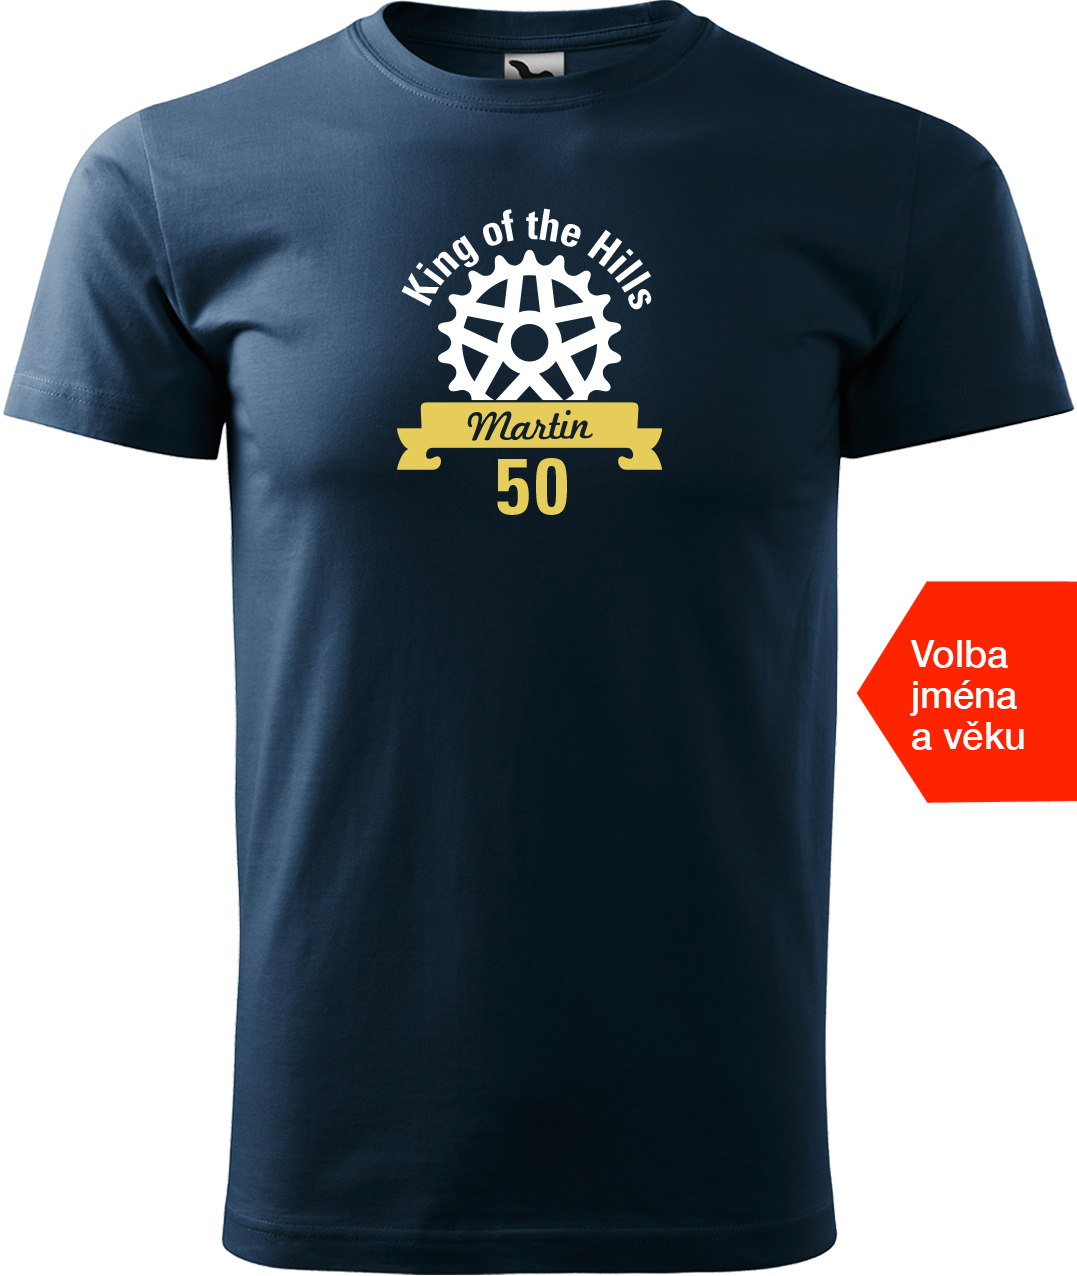 Pánské tričko pro cyklistu se jménem - King of the Hills Velikost: L, Barva: Námořní modrá (02)